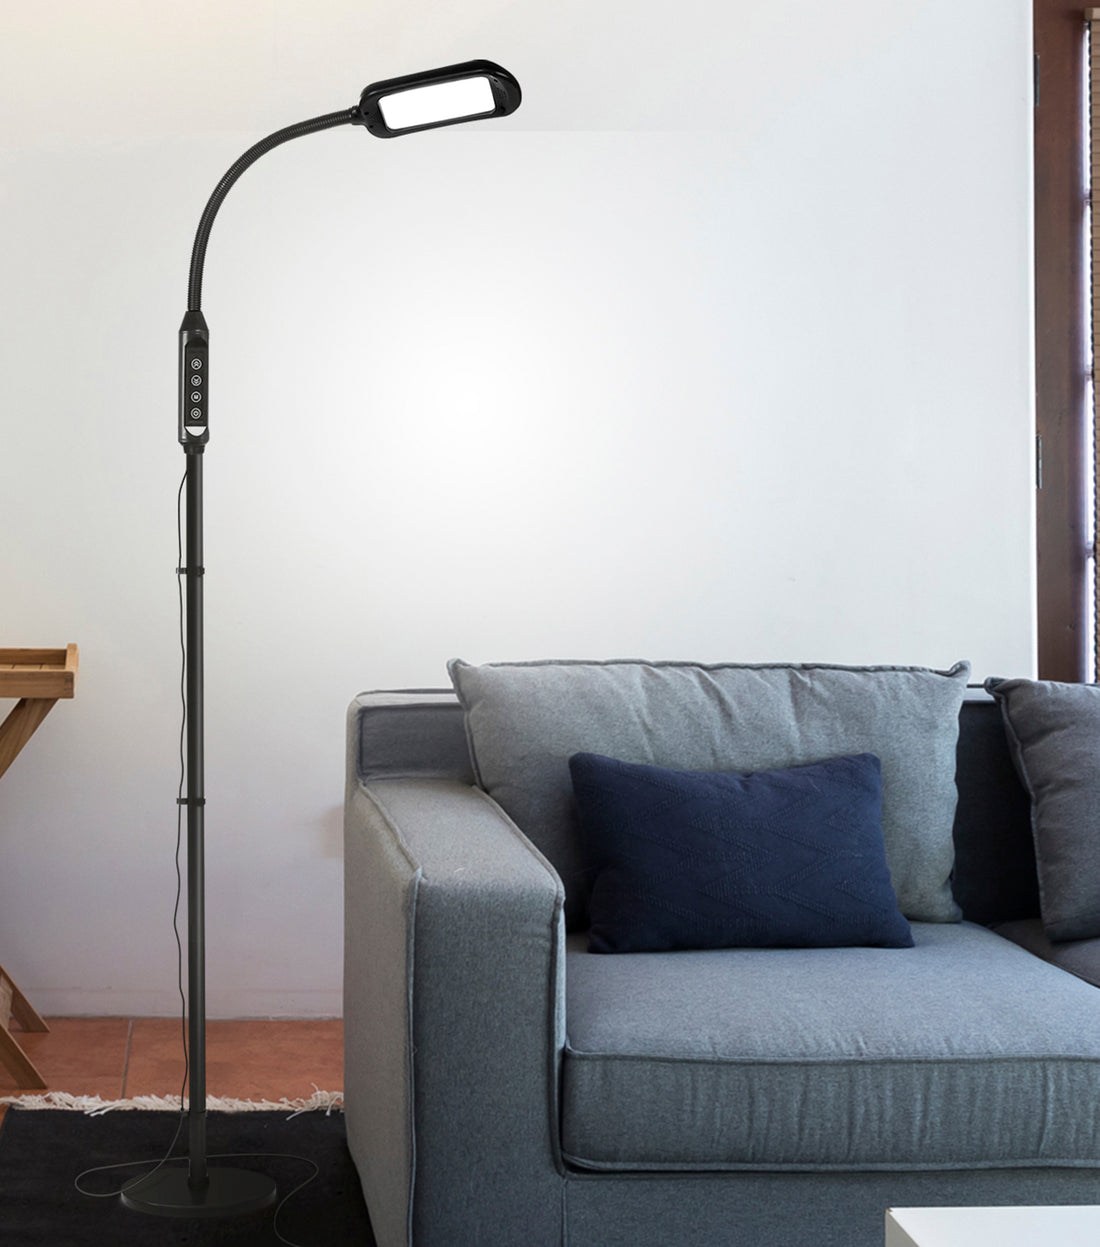 OttLite Lighting OttLite 56 LED 2 in 1 LED Magnifier Floor & Table Lamp - White - Floor Lamps - Sewing Supplies